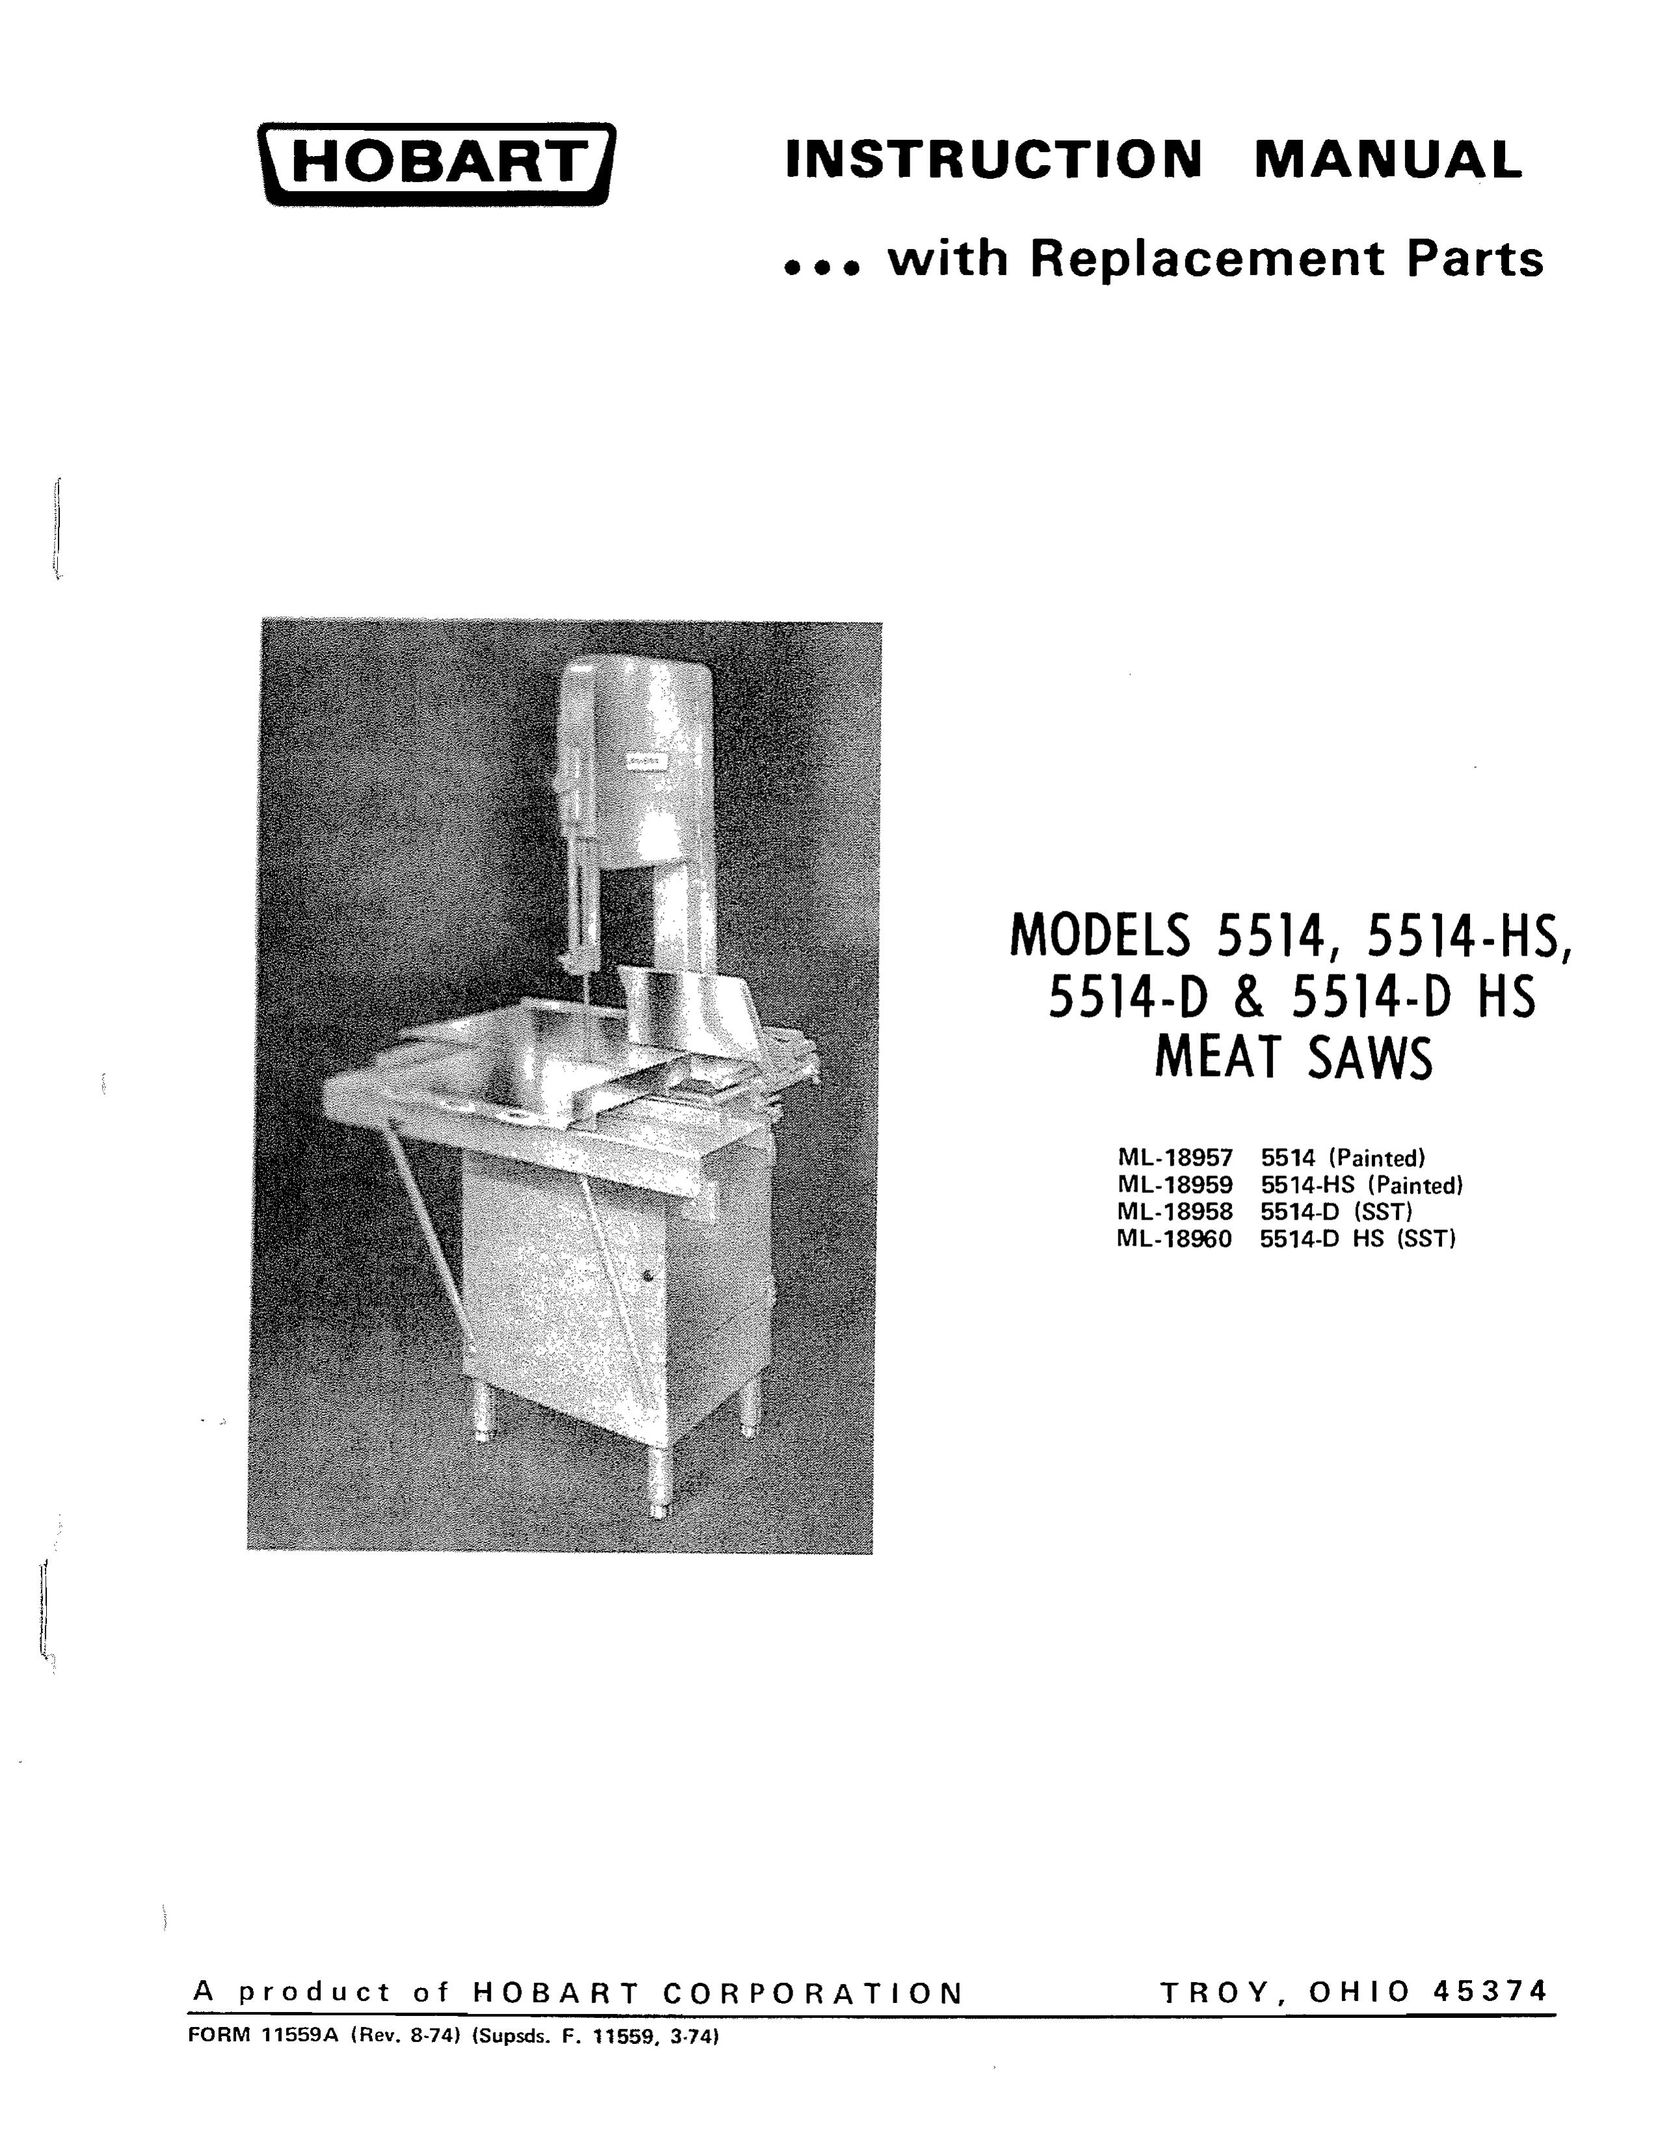 Hobart 5514-D HS Plumbing Product User Manual